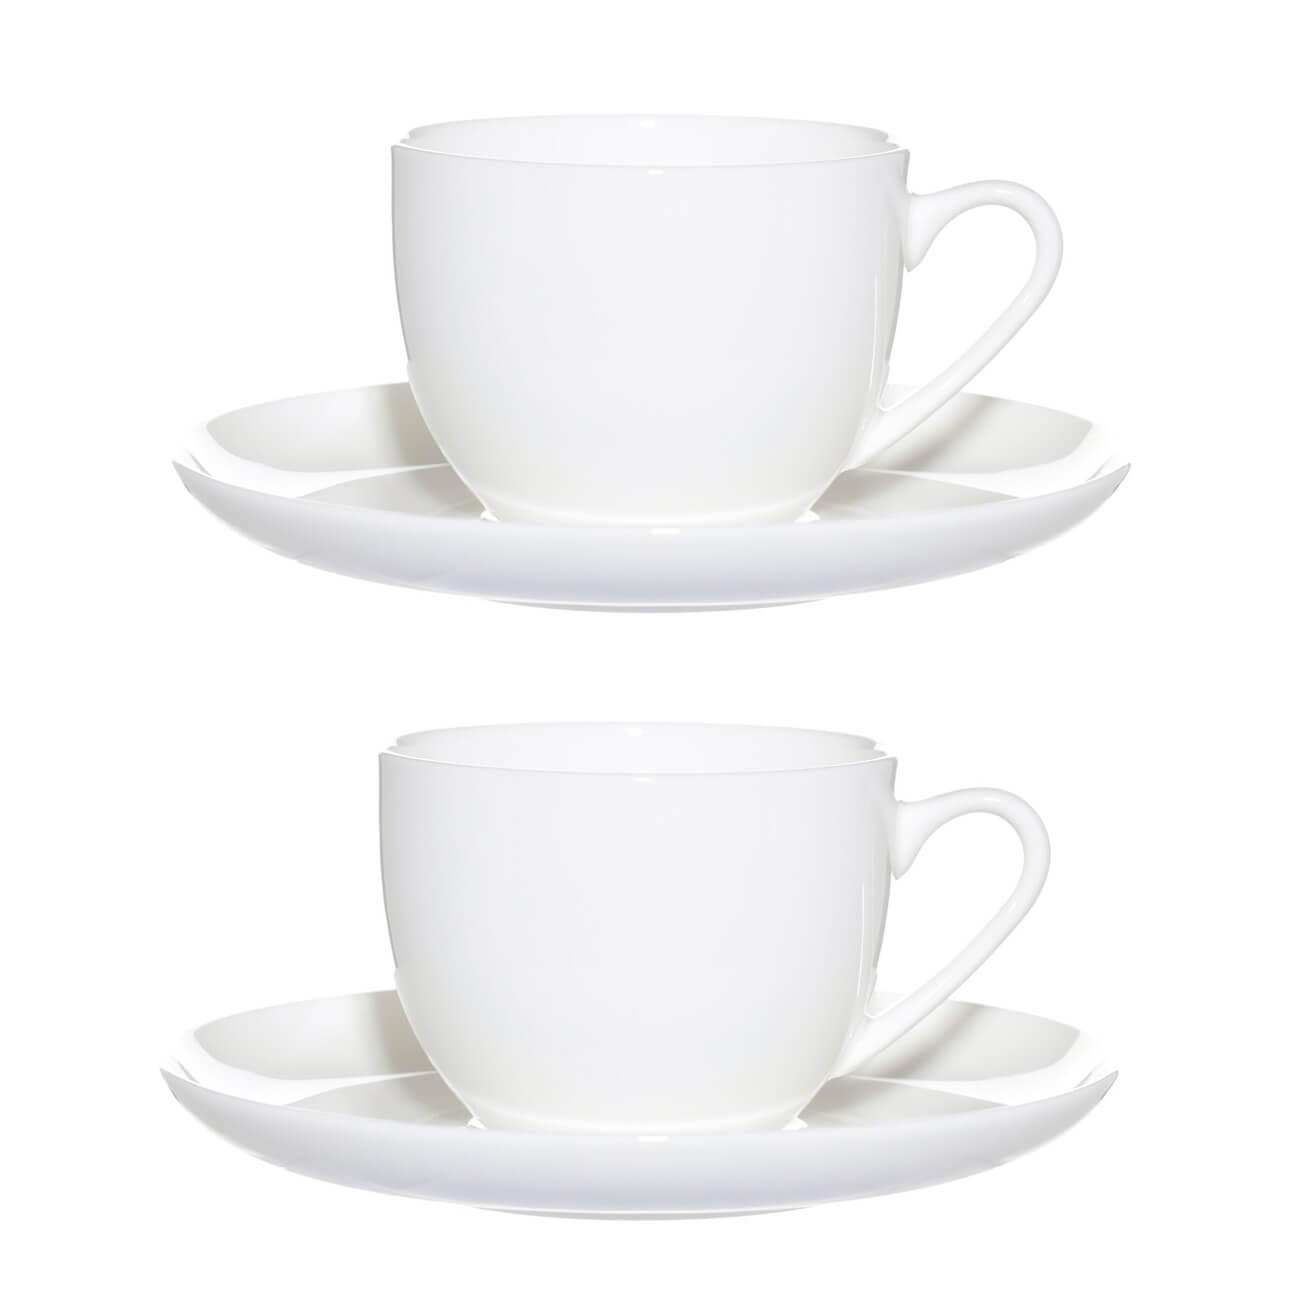 пара чайная 6 перс 12 пр 250 мл фарфор f белая ideal white Пара чайная, 2 перс, 4 пр, 250 мл, фарфор F, белая, Ideal white